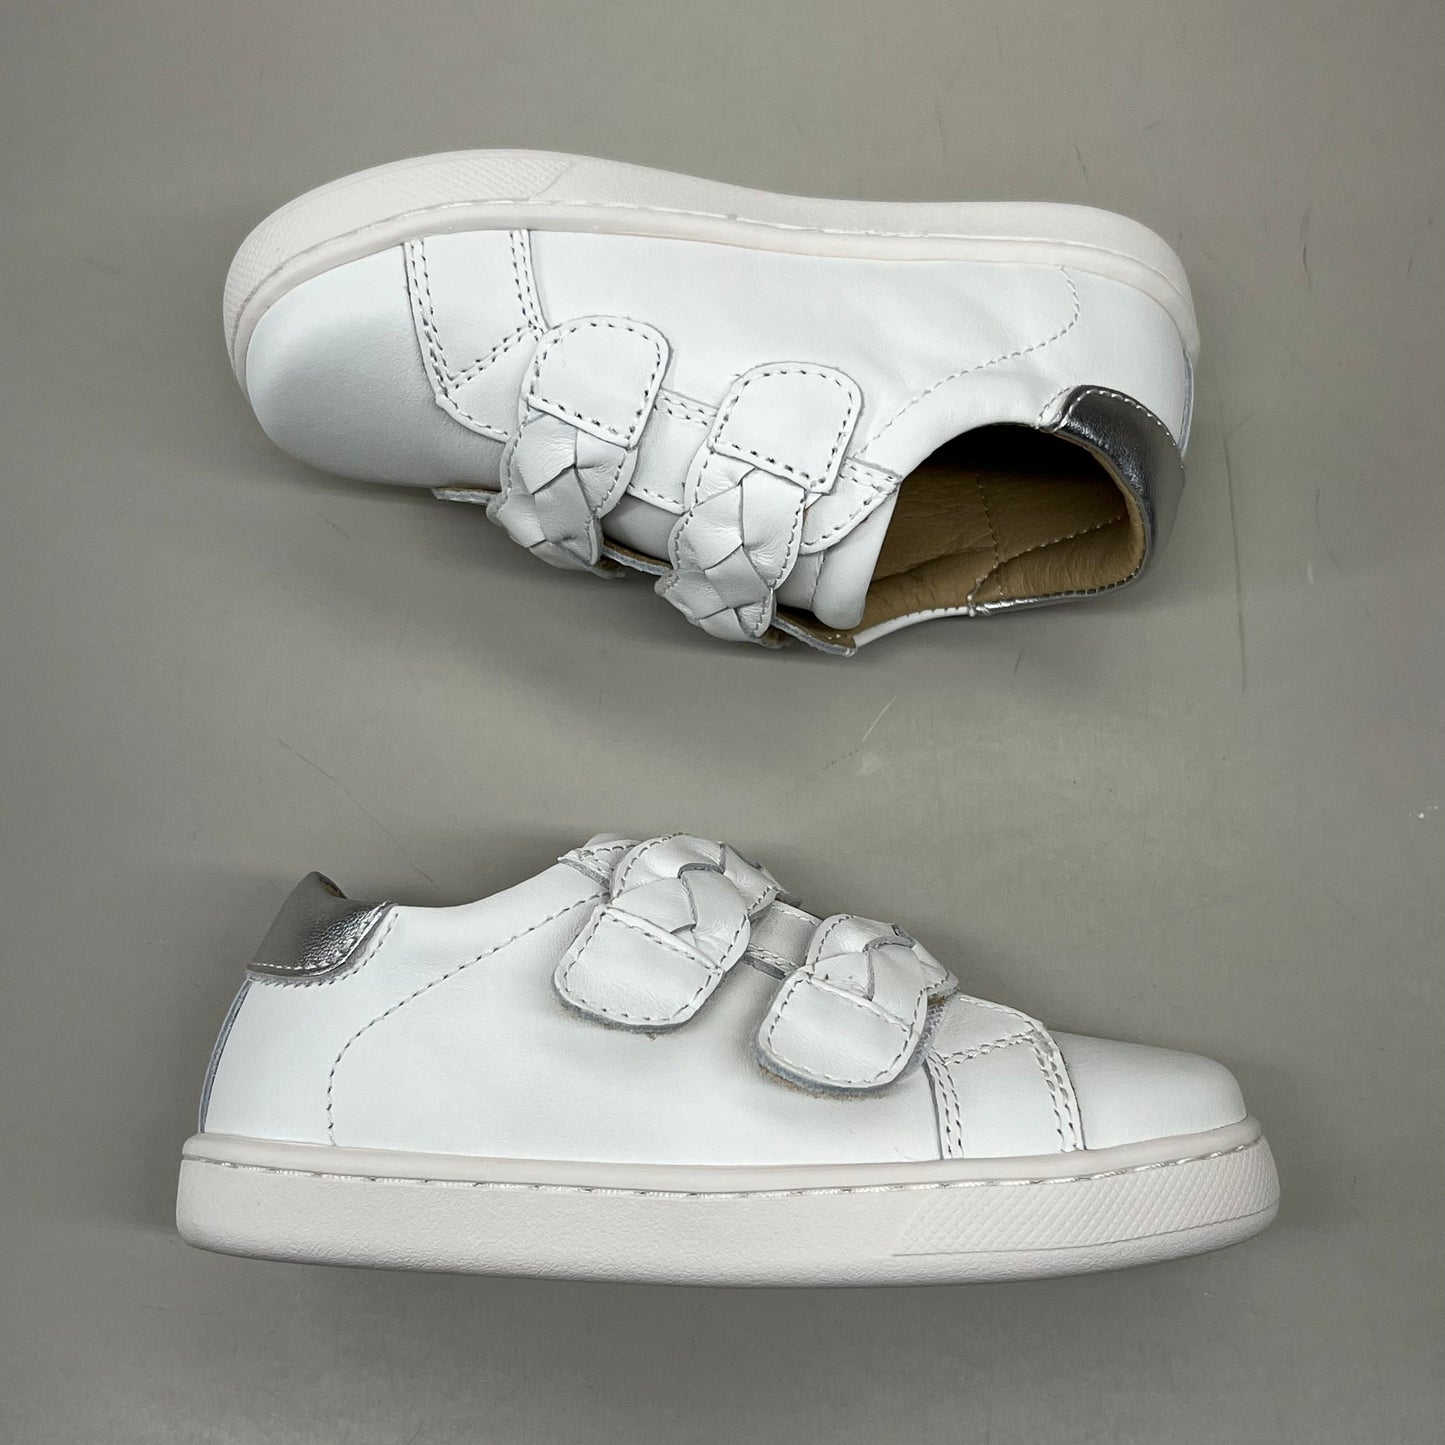 OLD SOLES Kid's Plats Leather Shoe Sz 11 EU 28 Snow / Silver #6134